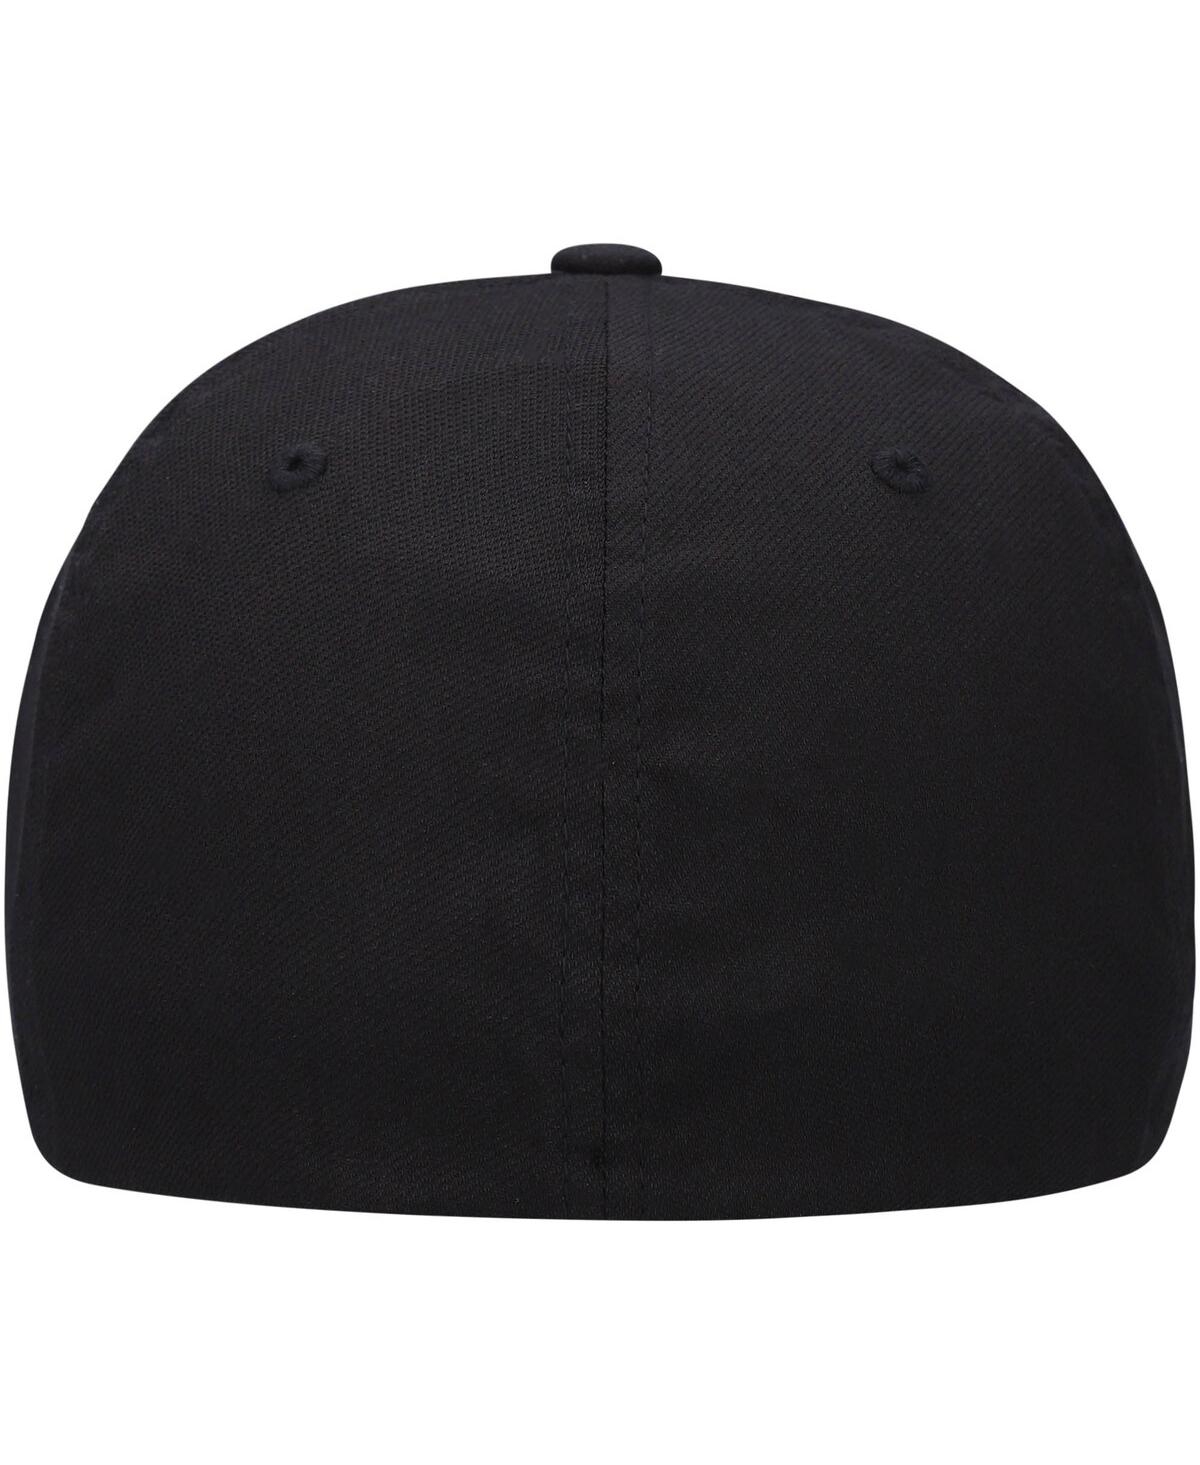 Shop Travis Mathew Men's Travismathew Black Dopp Tri-blend Flex Hat